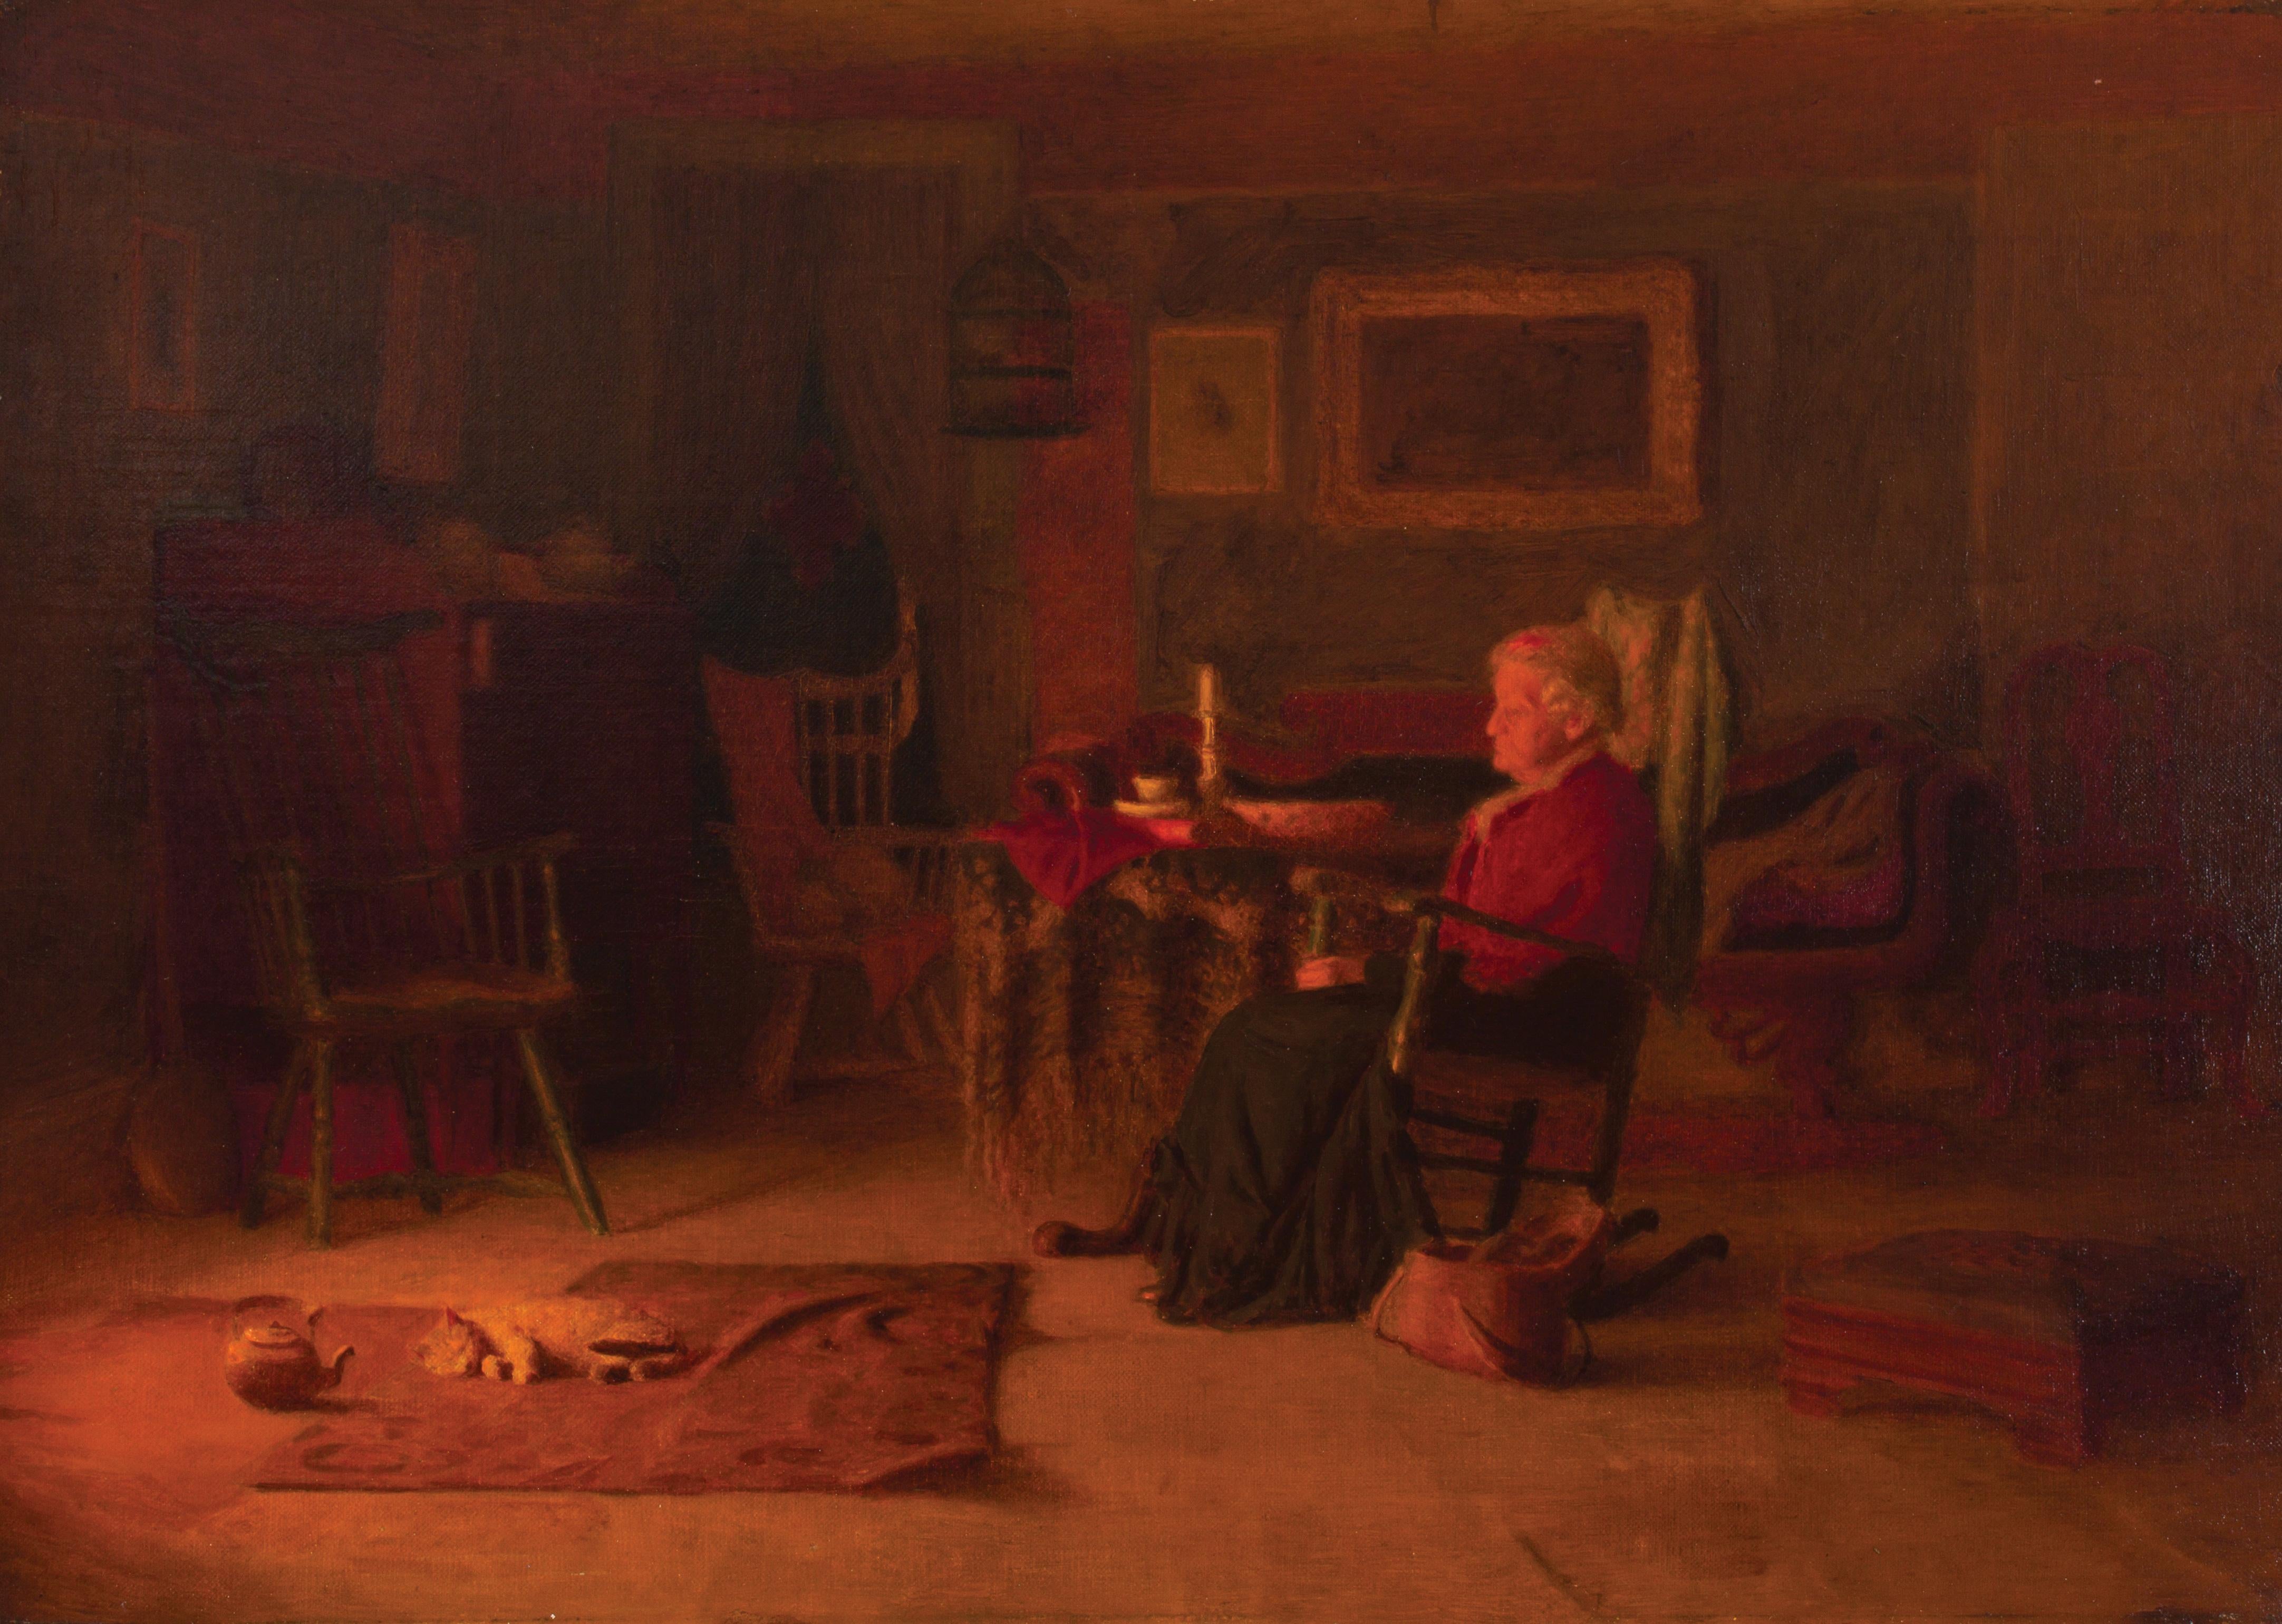 Sewing By The Hearth: Innenraumszene mit Katze von Thomas Anshutz, Schüler von Eakins – Painting von Thomas P Anshutz